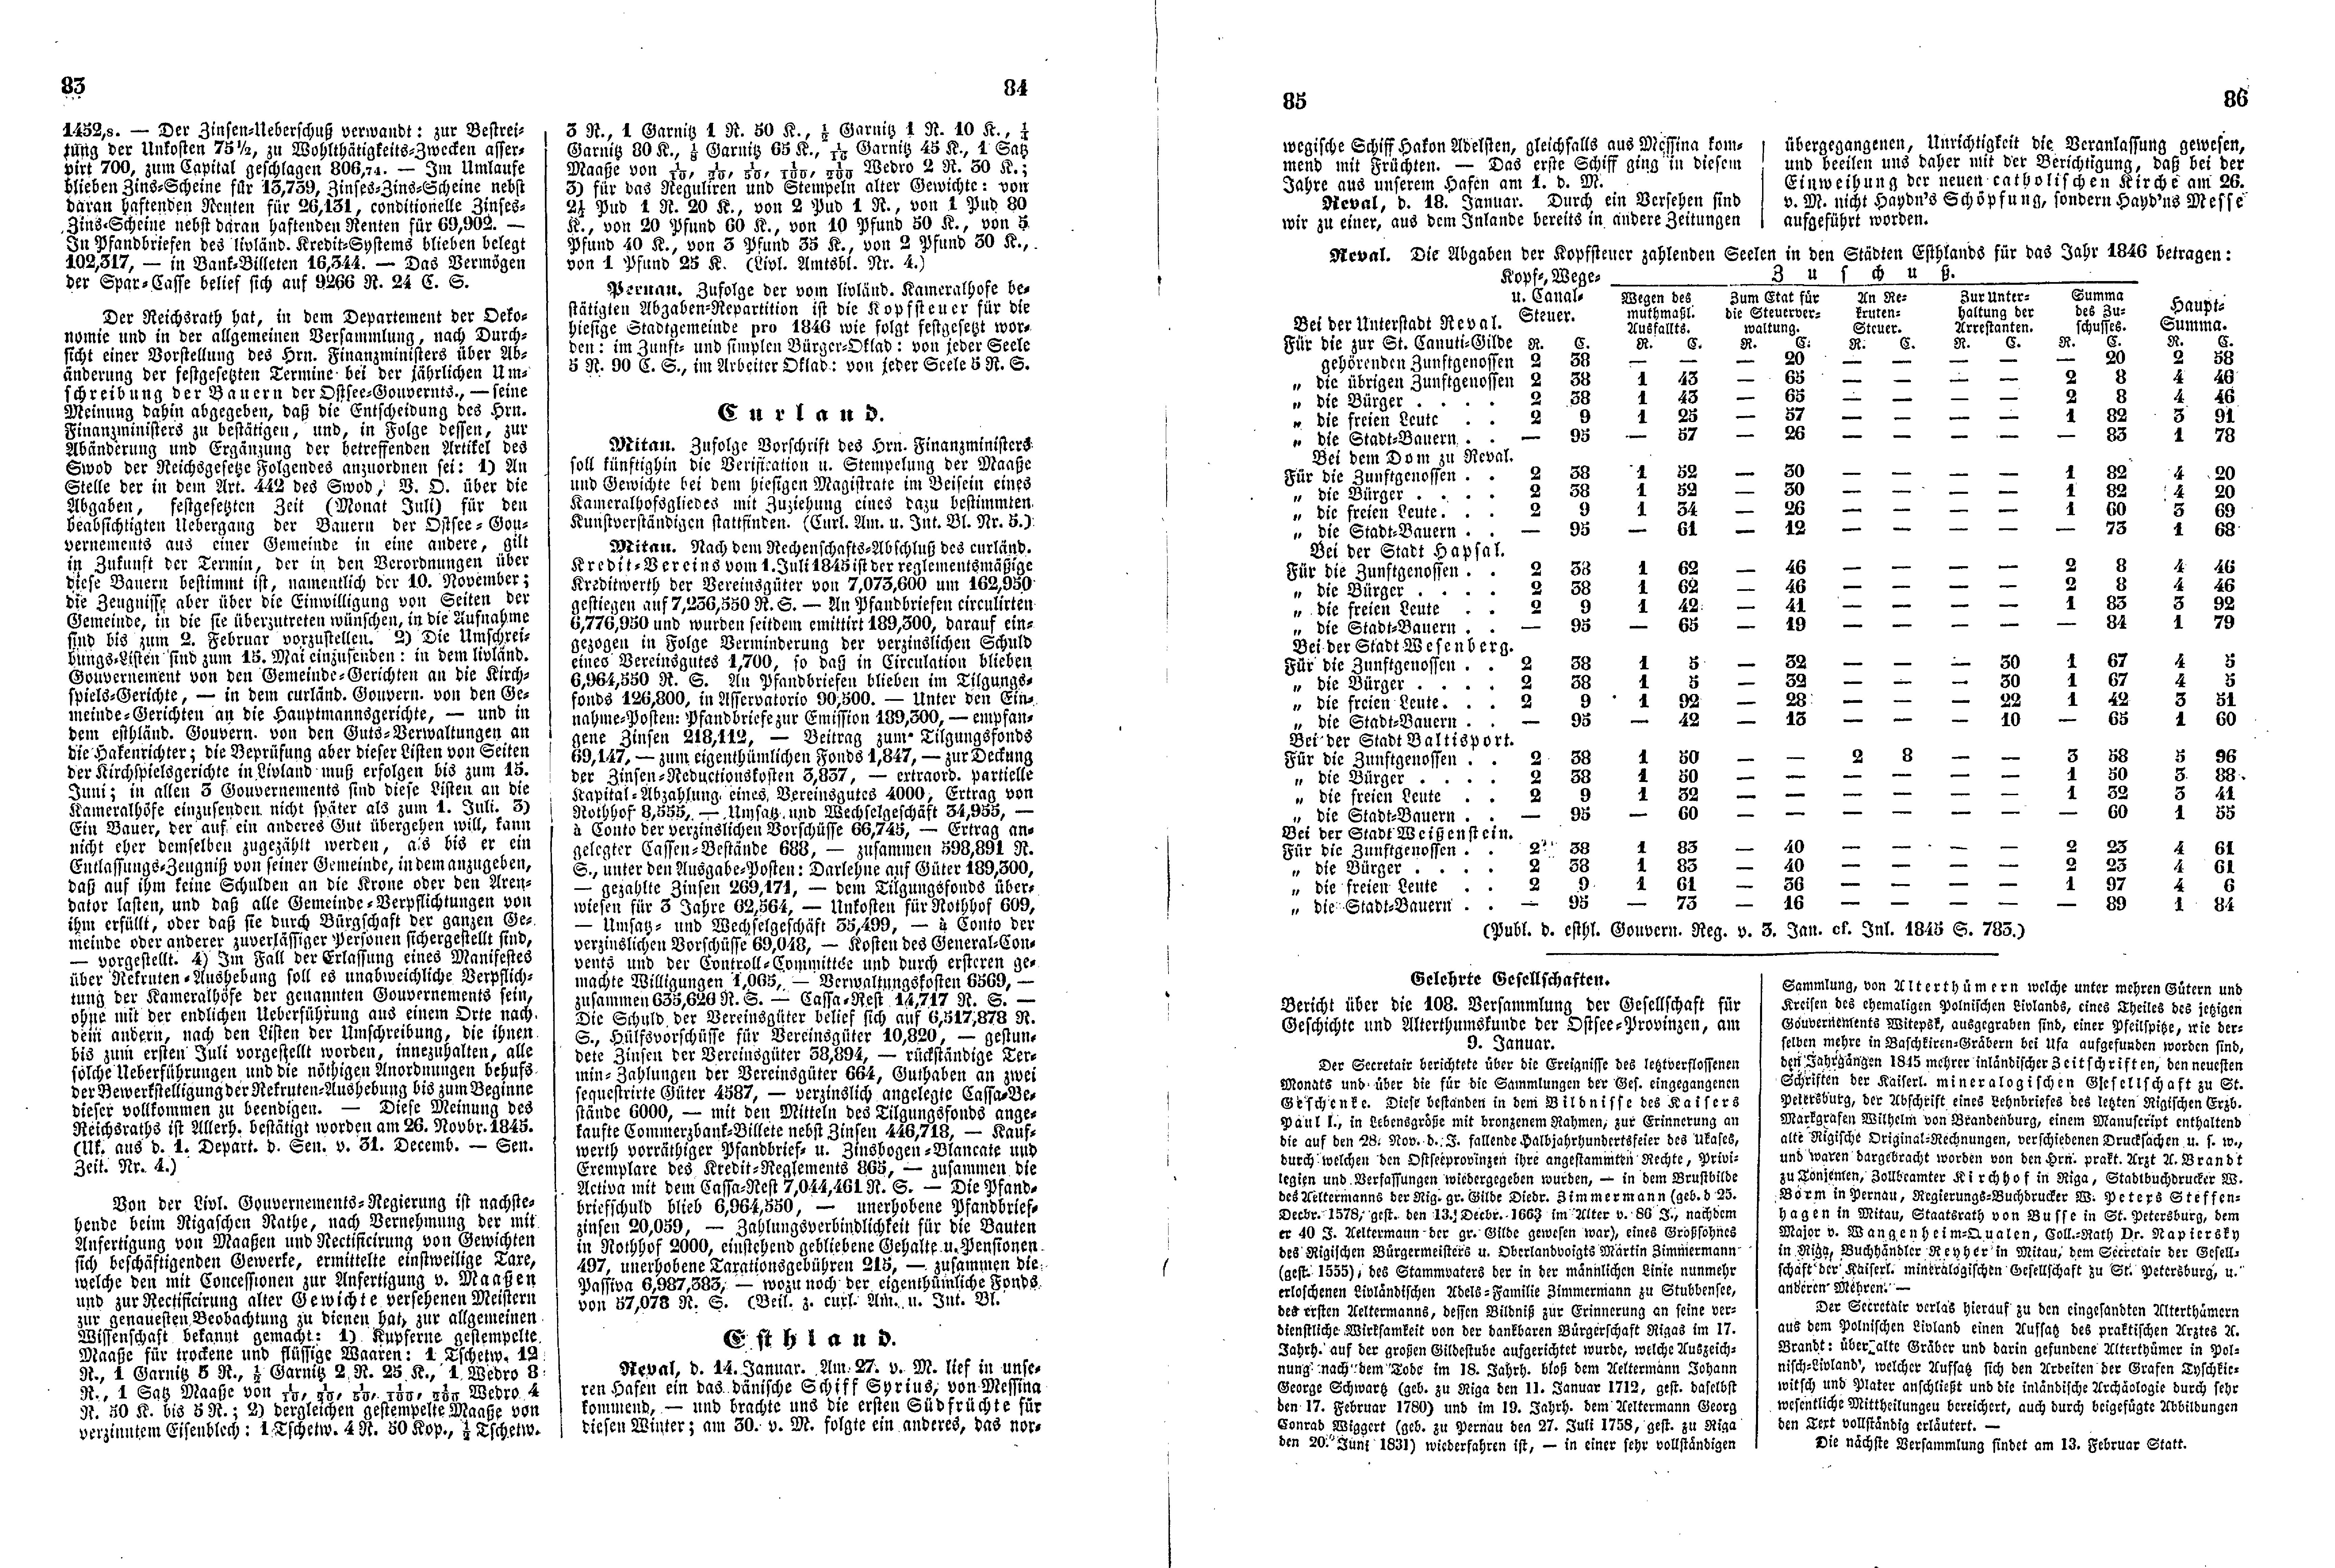 Das Inland [11] (1846) | 26. (83-86) Основной текст